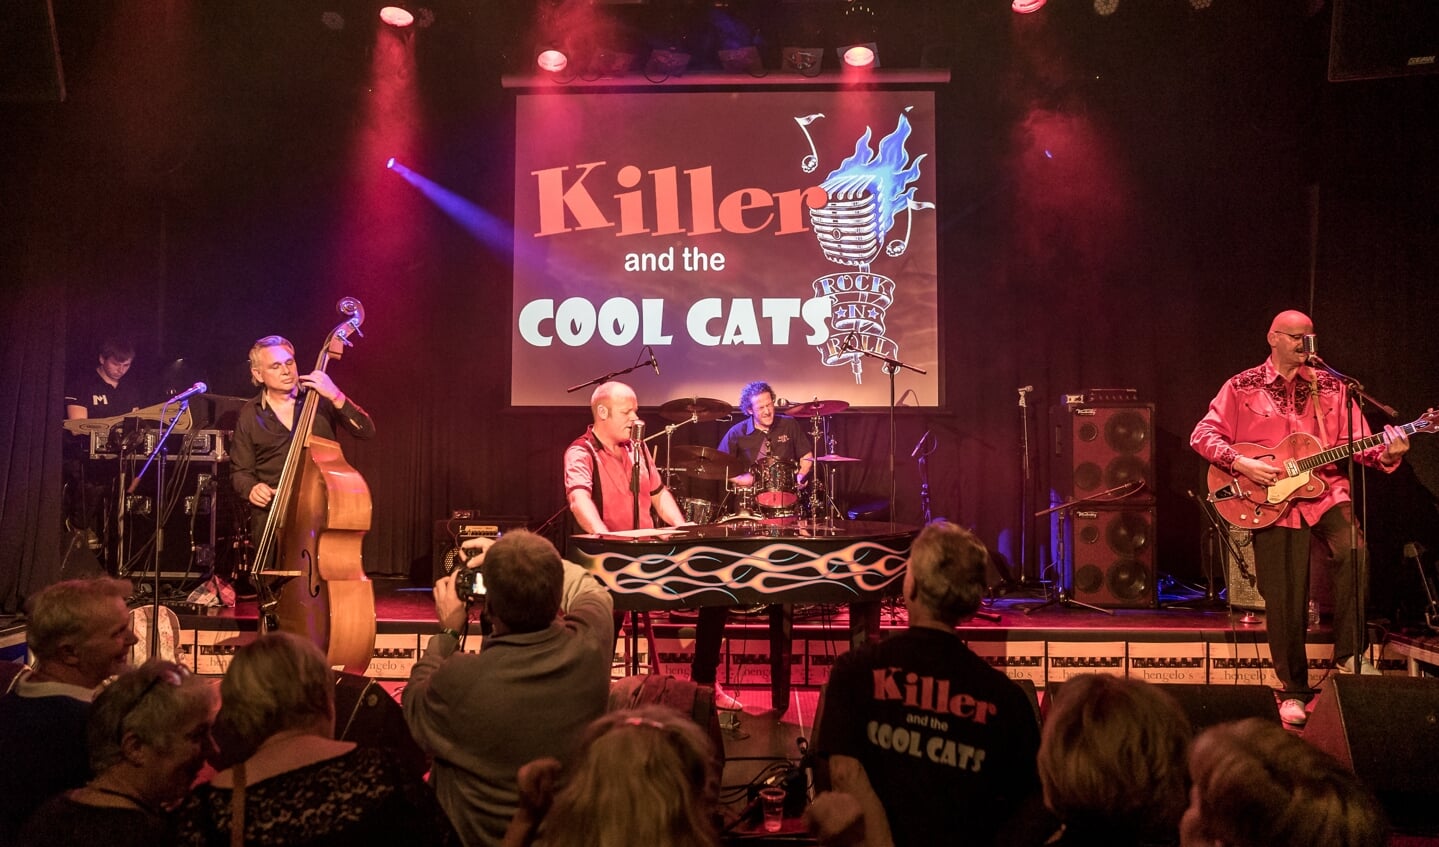 Killer and the coolcats speelt op 'Op 't Arf in de Hiet'. Foto: Maaike Ronhaar/MaronStills